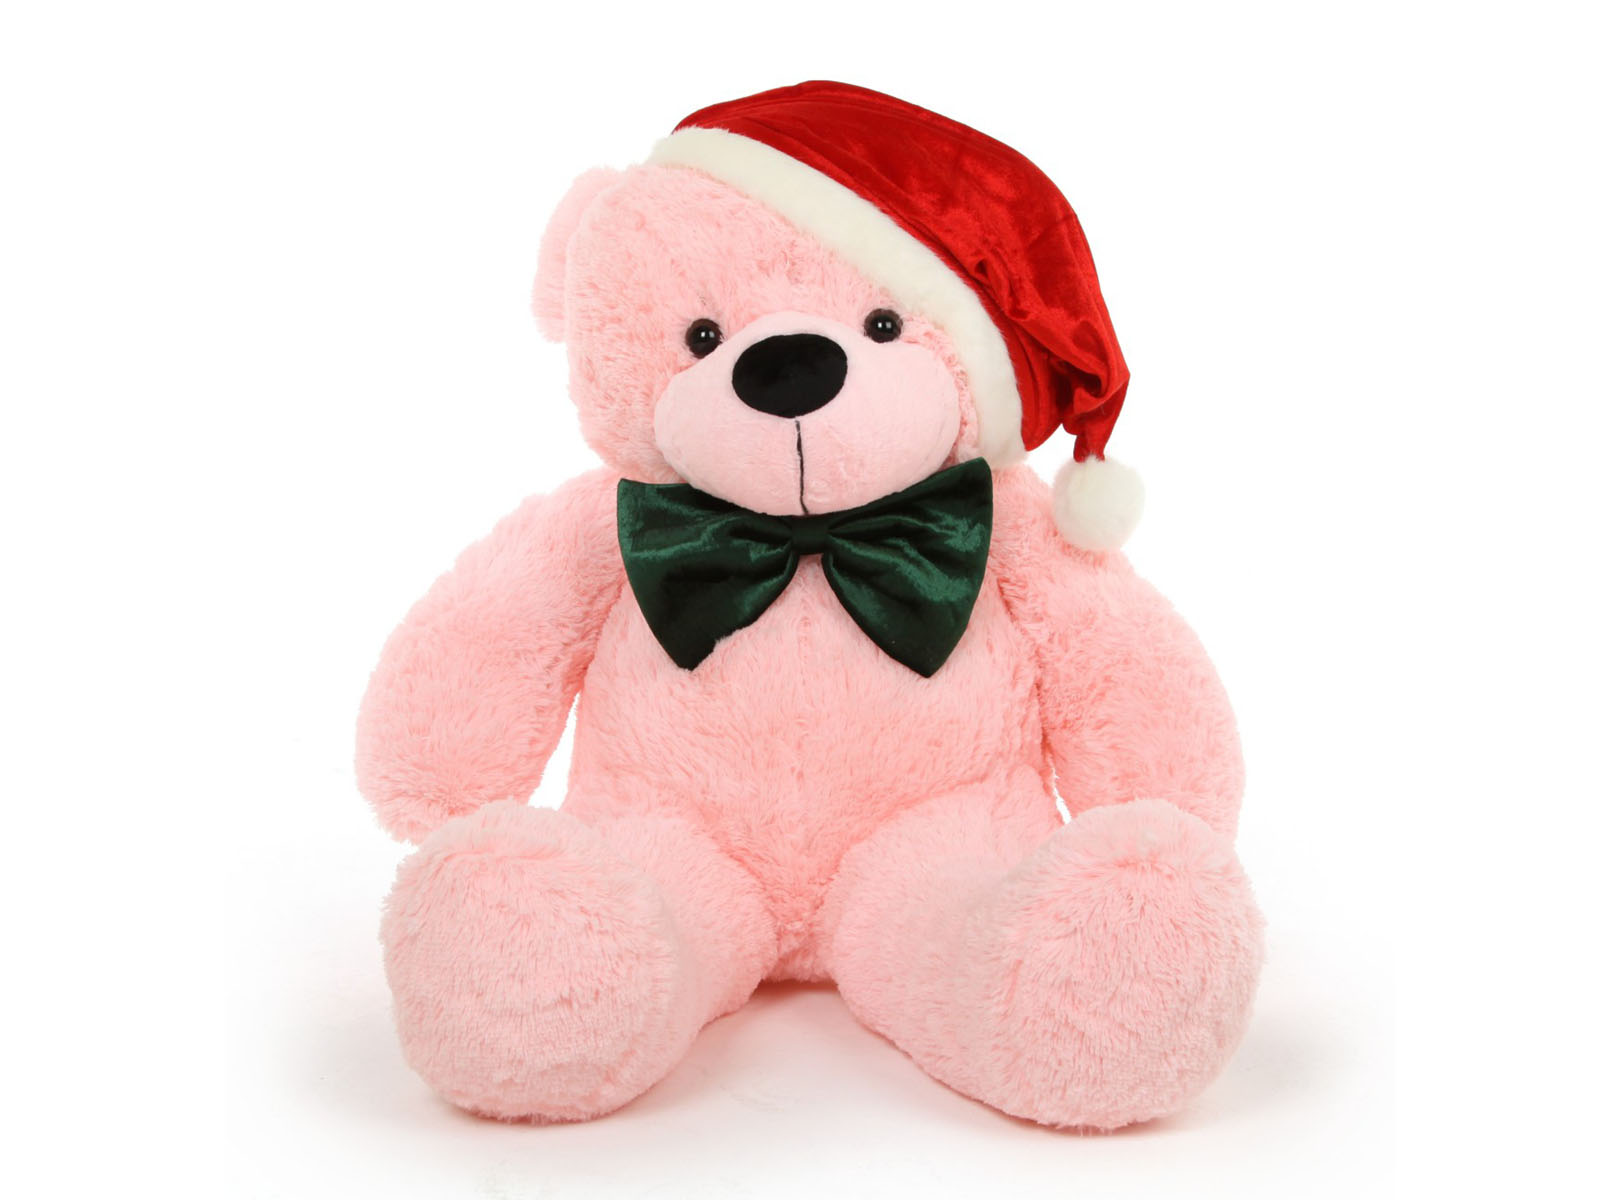 cute teddy bear wallpaper,stuffed toy,toy,teddy bear,pink,plush